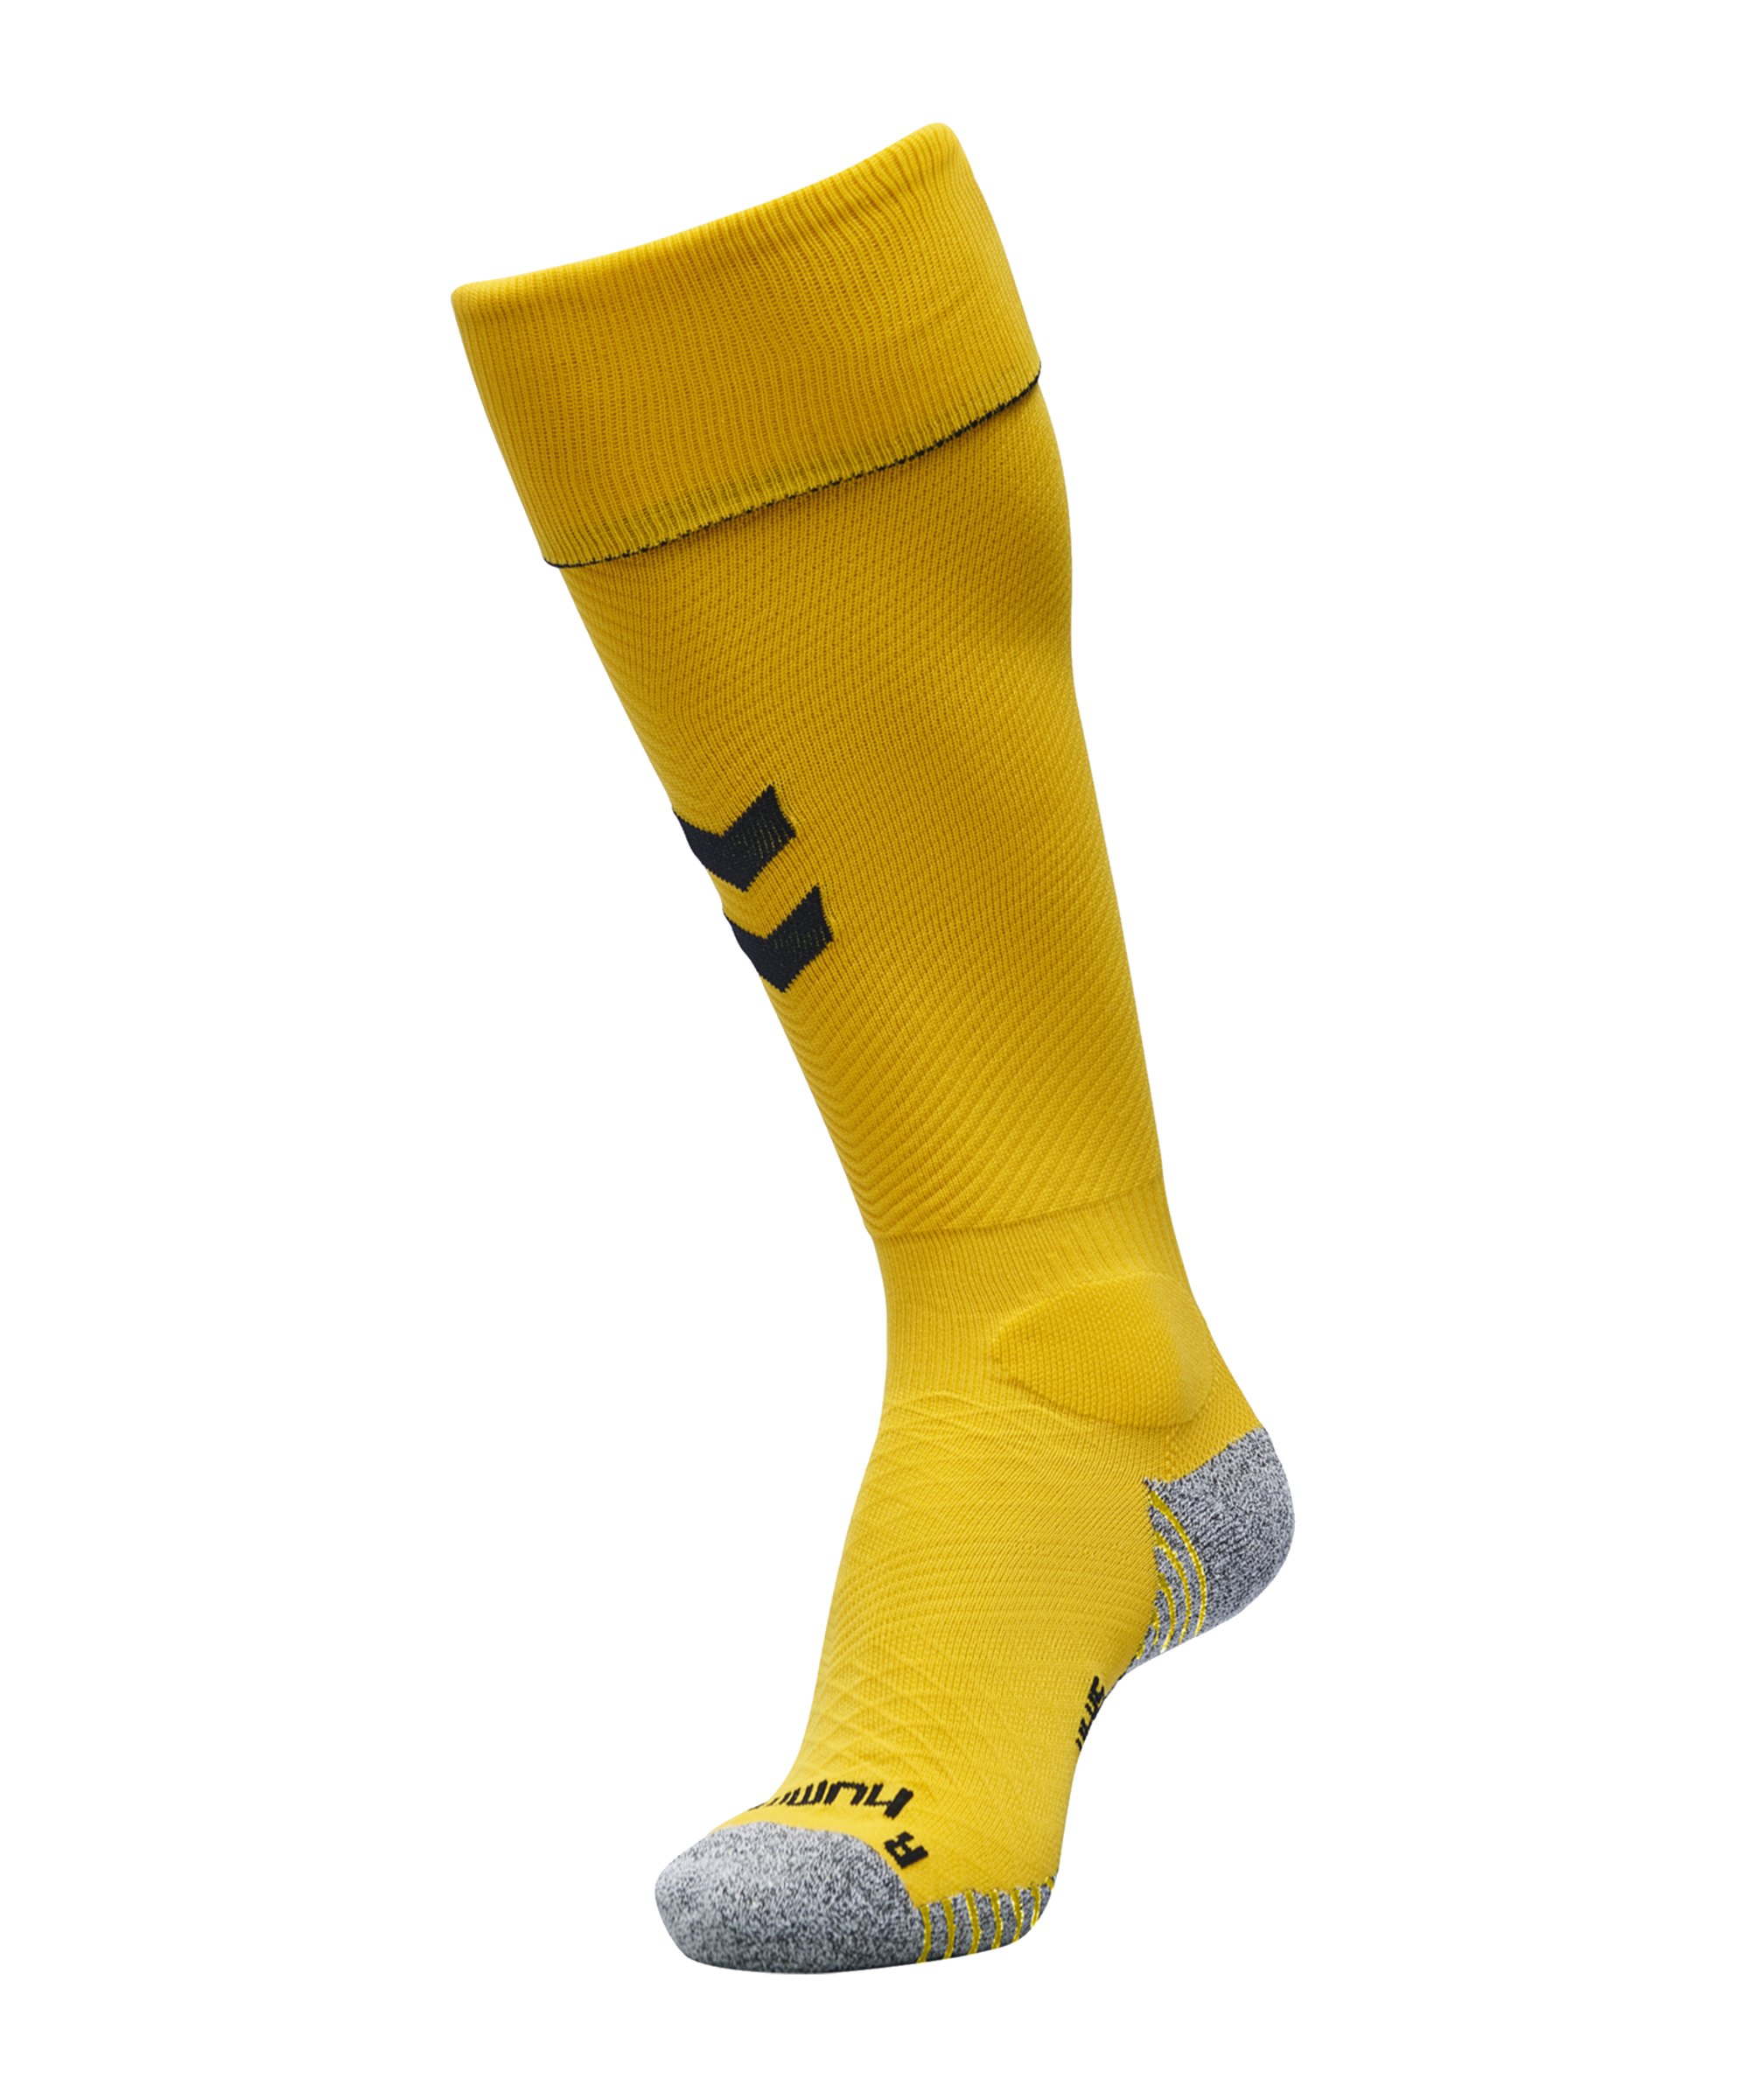 Hummel Pro Football Sock Socken Gelb F5115 - Gelb